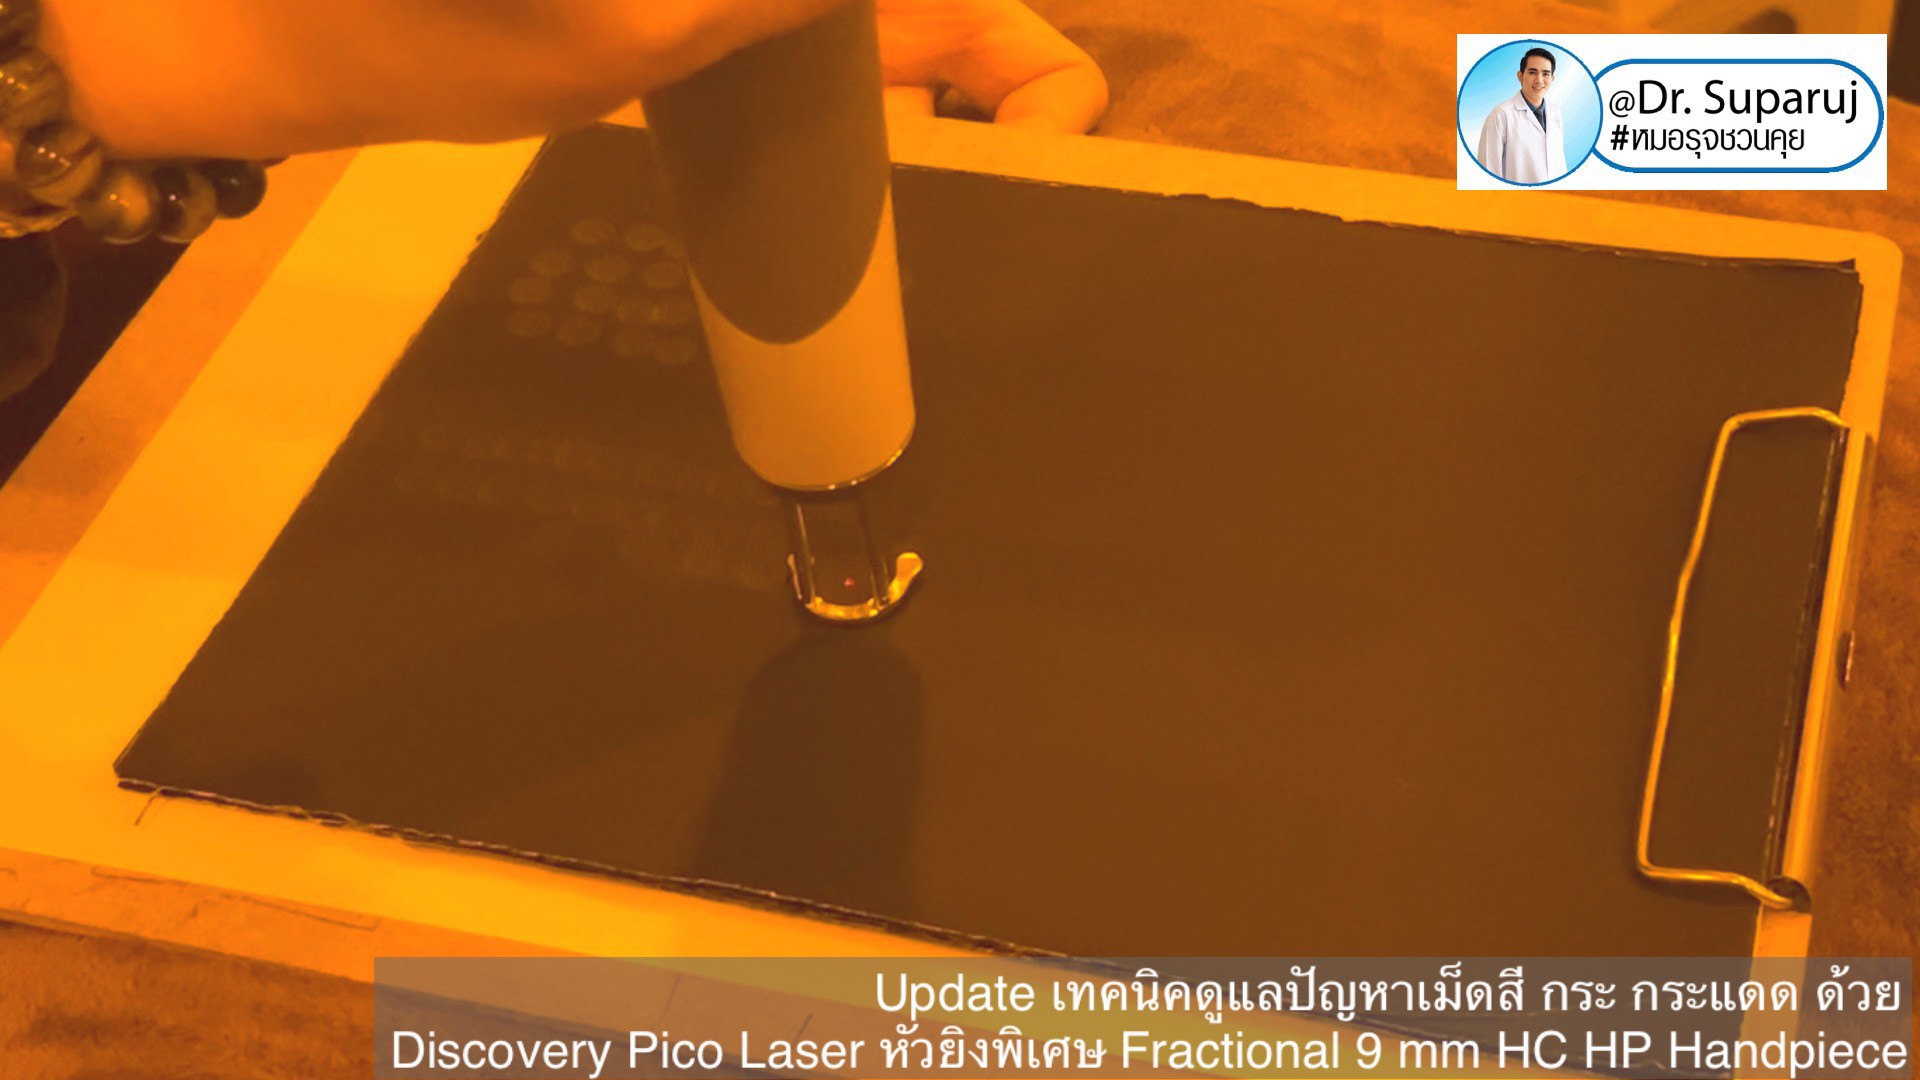 แนะนำเทคนิคดูแลปานน้ำตาล ด้วยเลเซอร์เทคนิค Fractional Pigment Toning FPT Discovery Picosecond Laser + Fractional 9 mm HC HP Handpiece